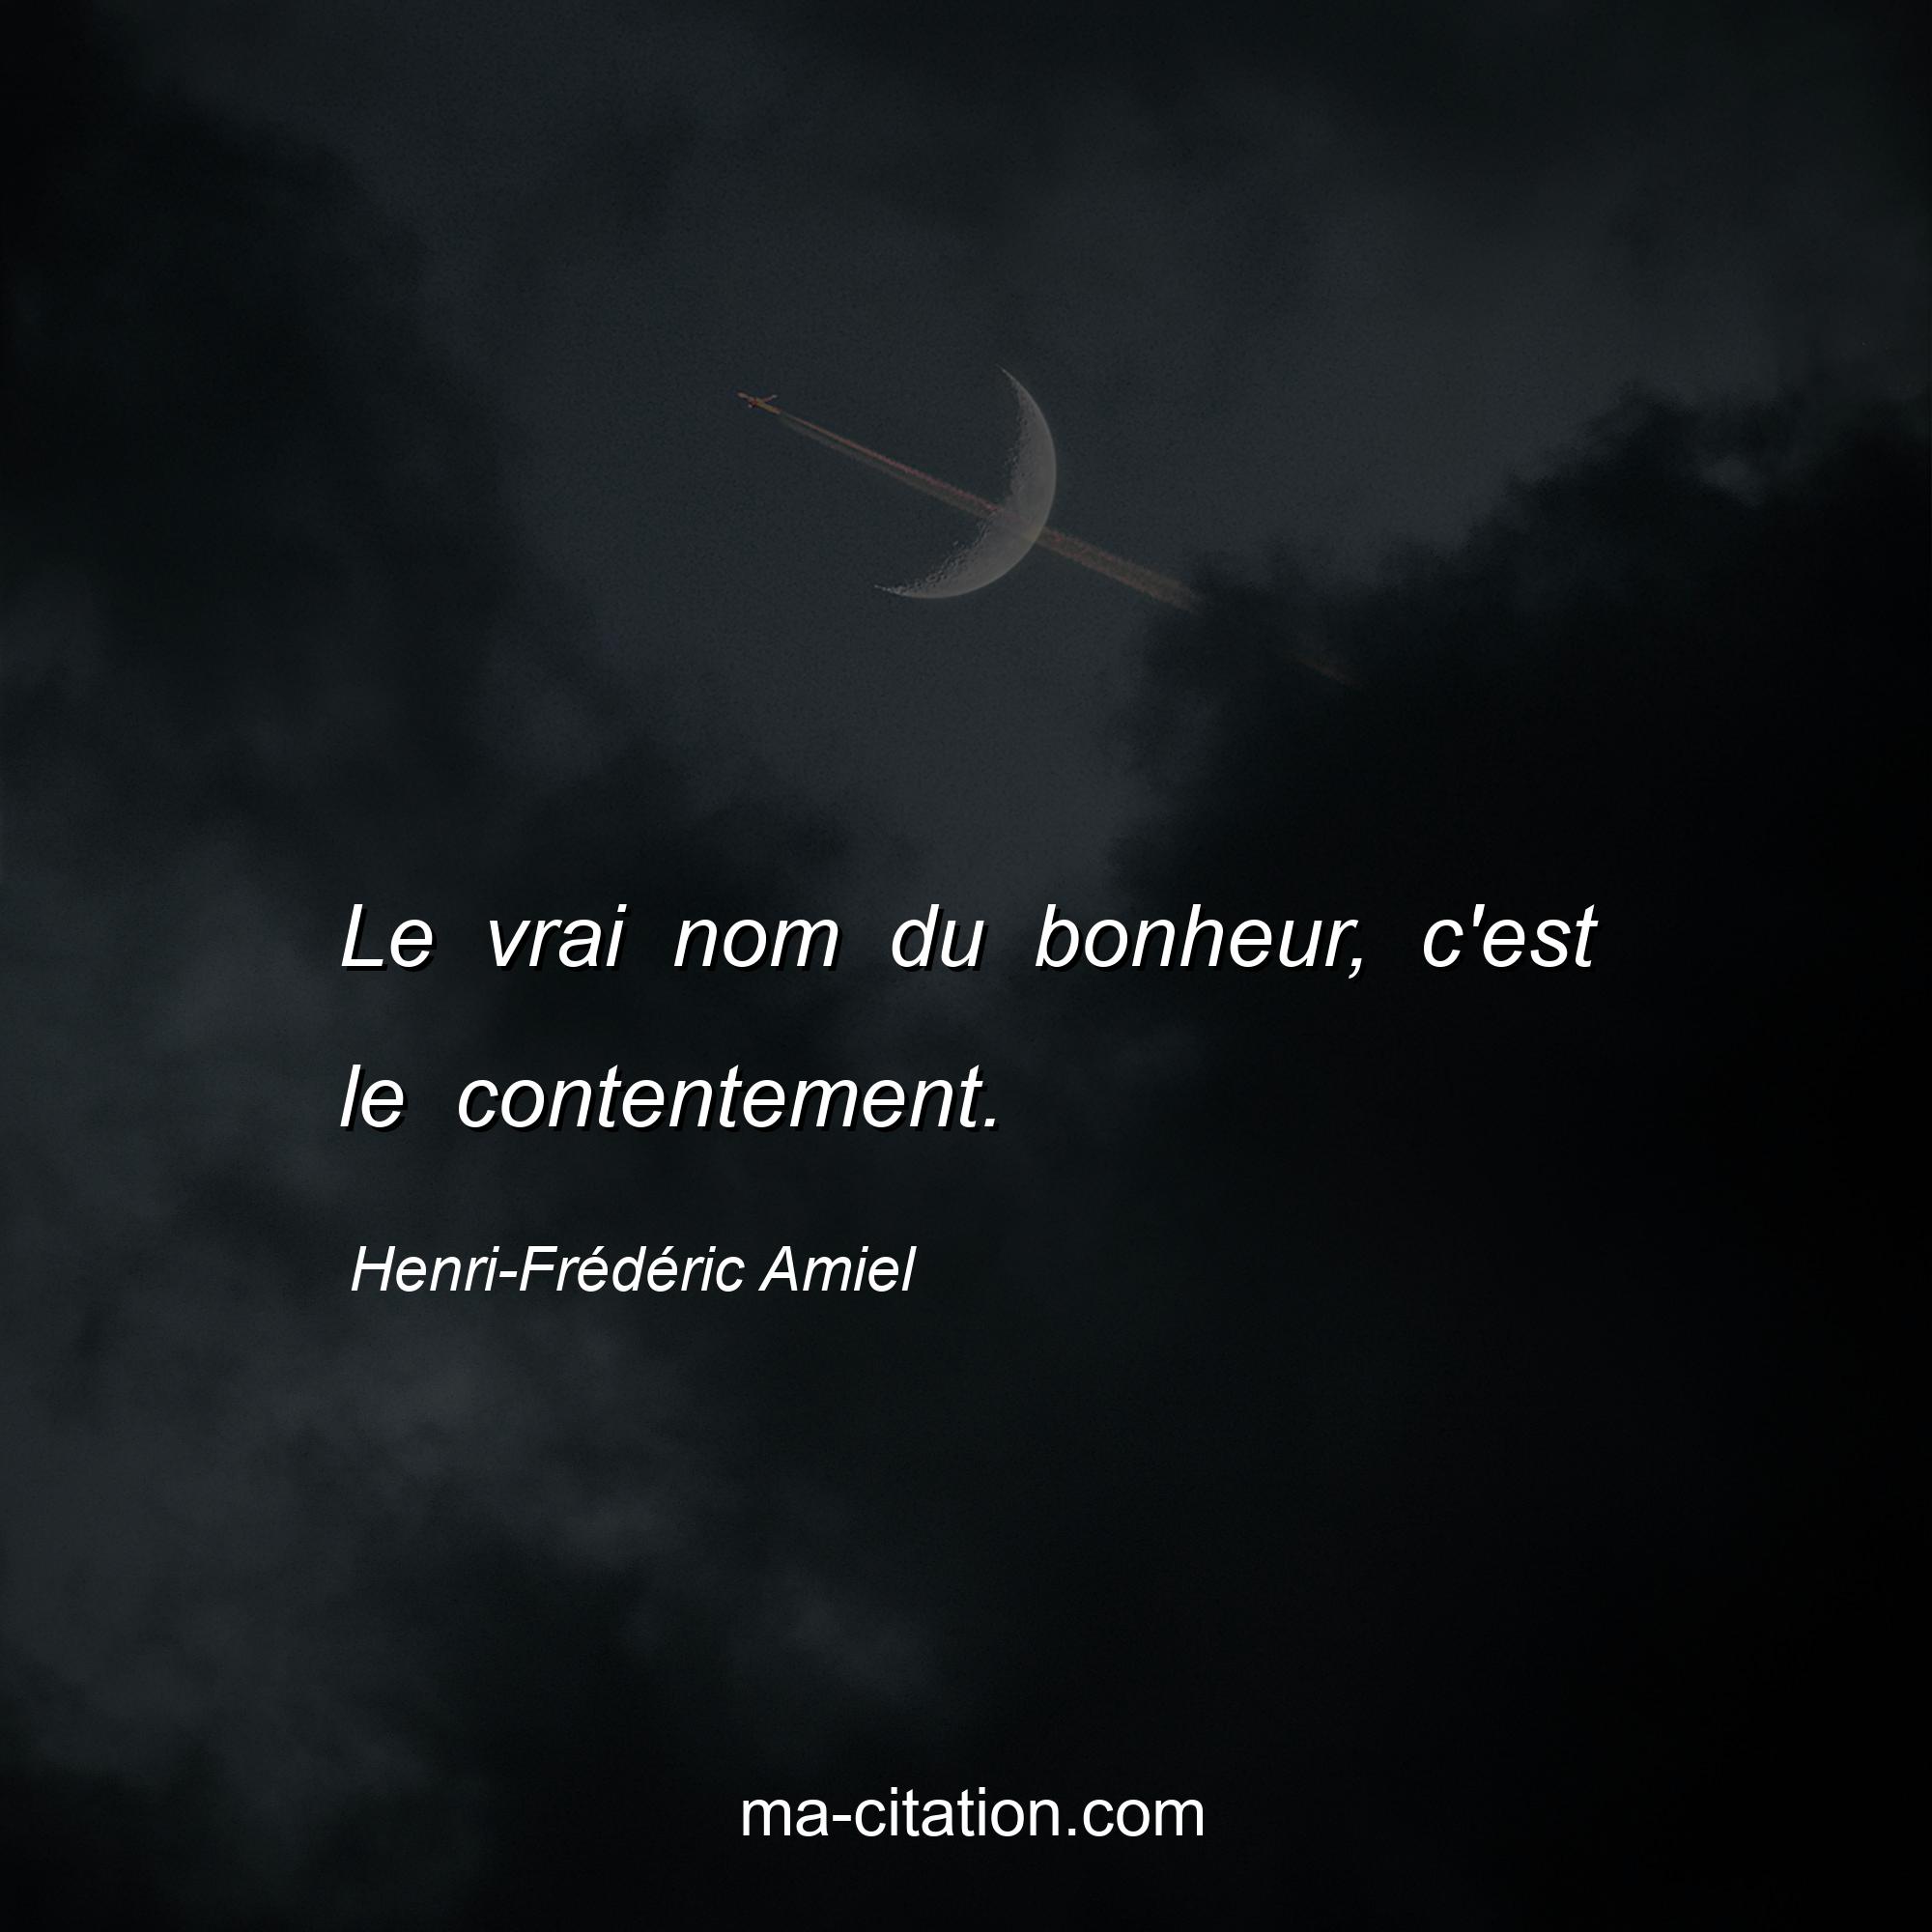 Henri-Frédéric Amiel : Le vrai nom du bonheur, c'est le contentement.